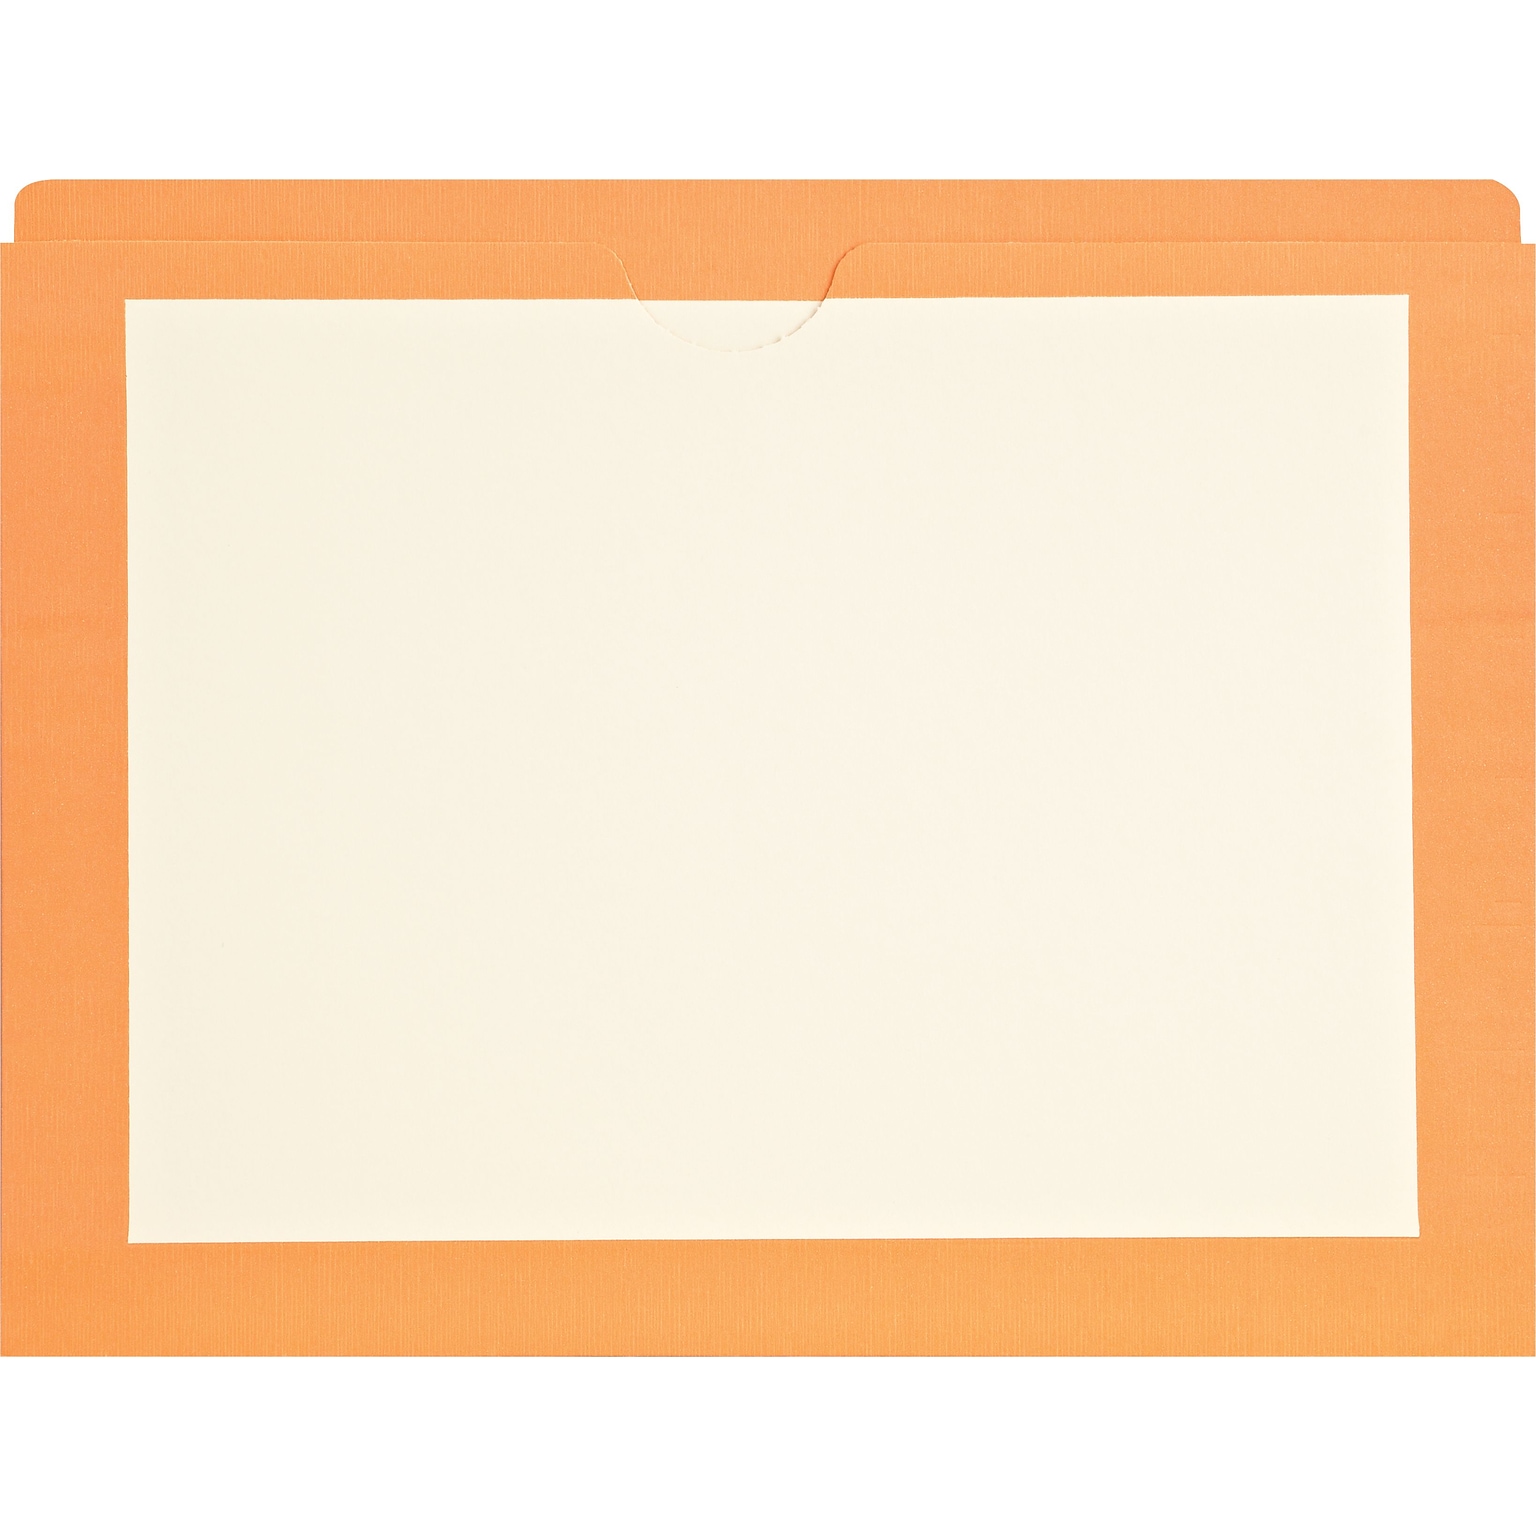 Medical Arts Press®  File Pocket, Letter Size, Orange, 100/Box (M11PKH)